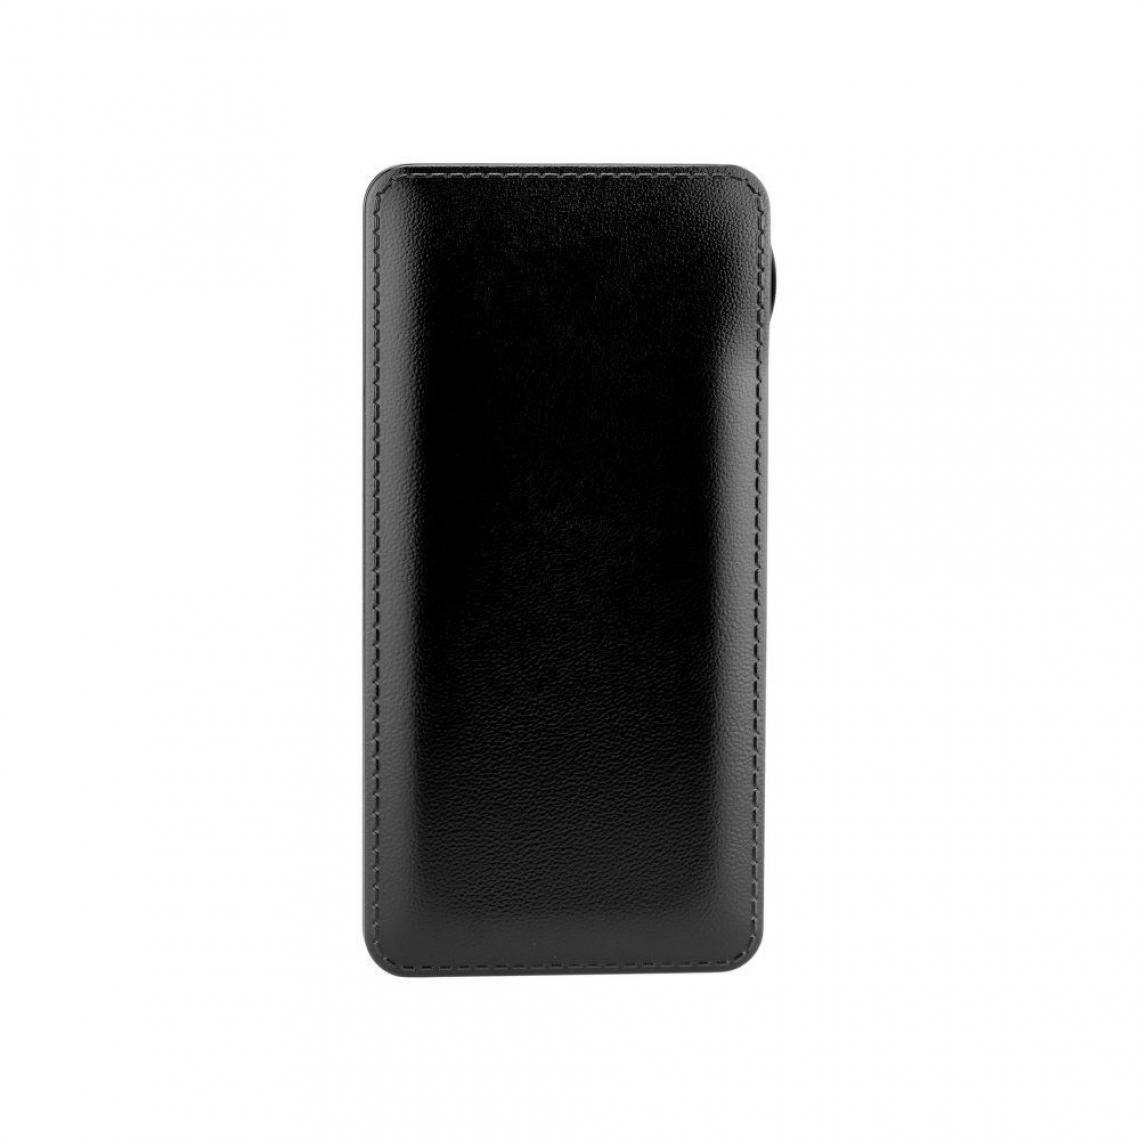 Ozzzo - Chargeur batterie externe 20000 mAh powerbank ozzzo noir pour SONY Xperia 1 2019 - Autres accessoires smartphone